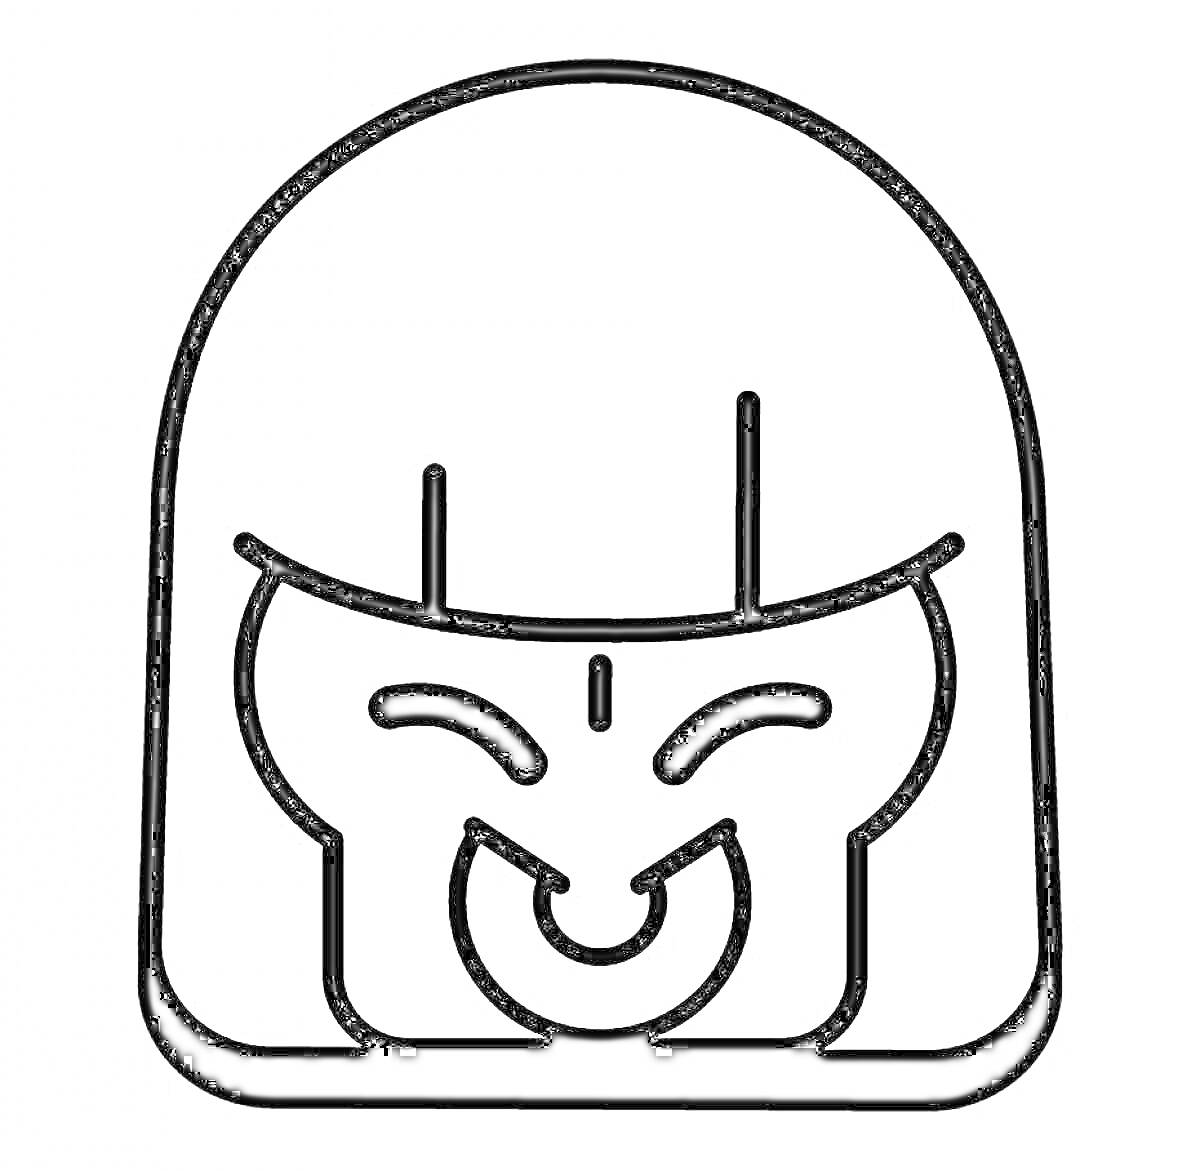 Раскраска значок улыбающегося персонажа с длинной челкой и пирсингом в носу